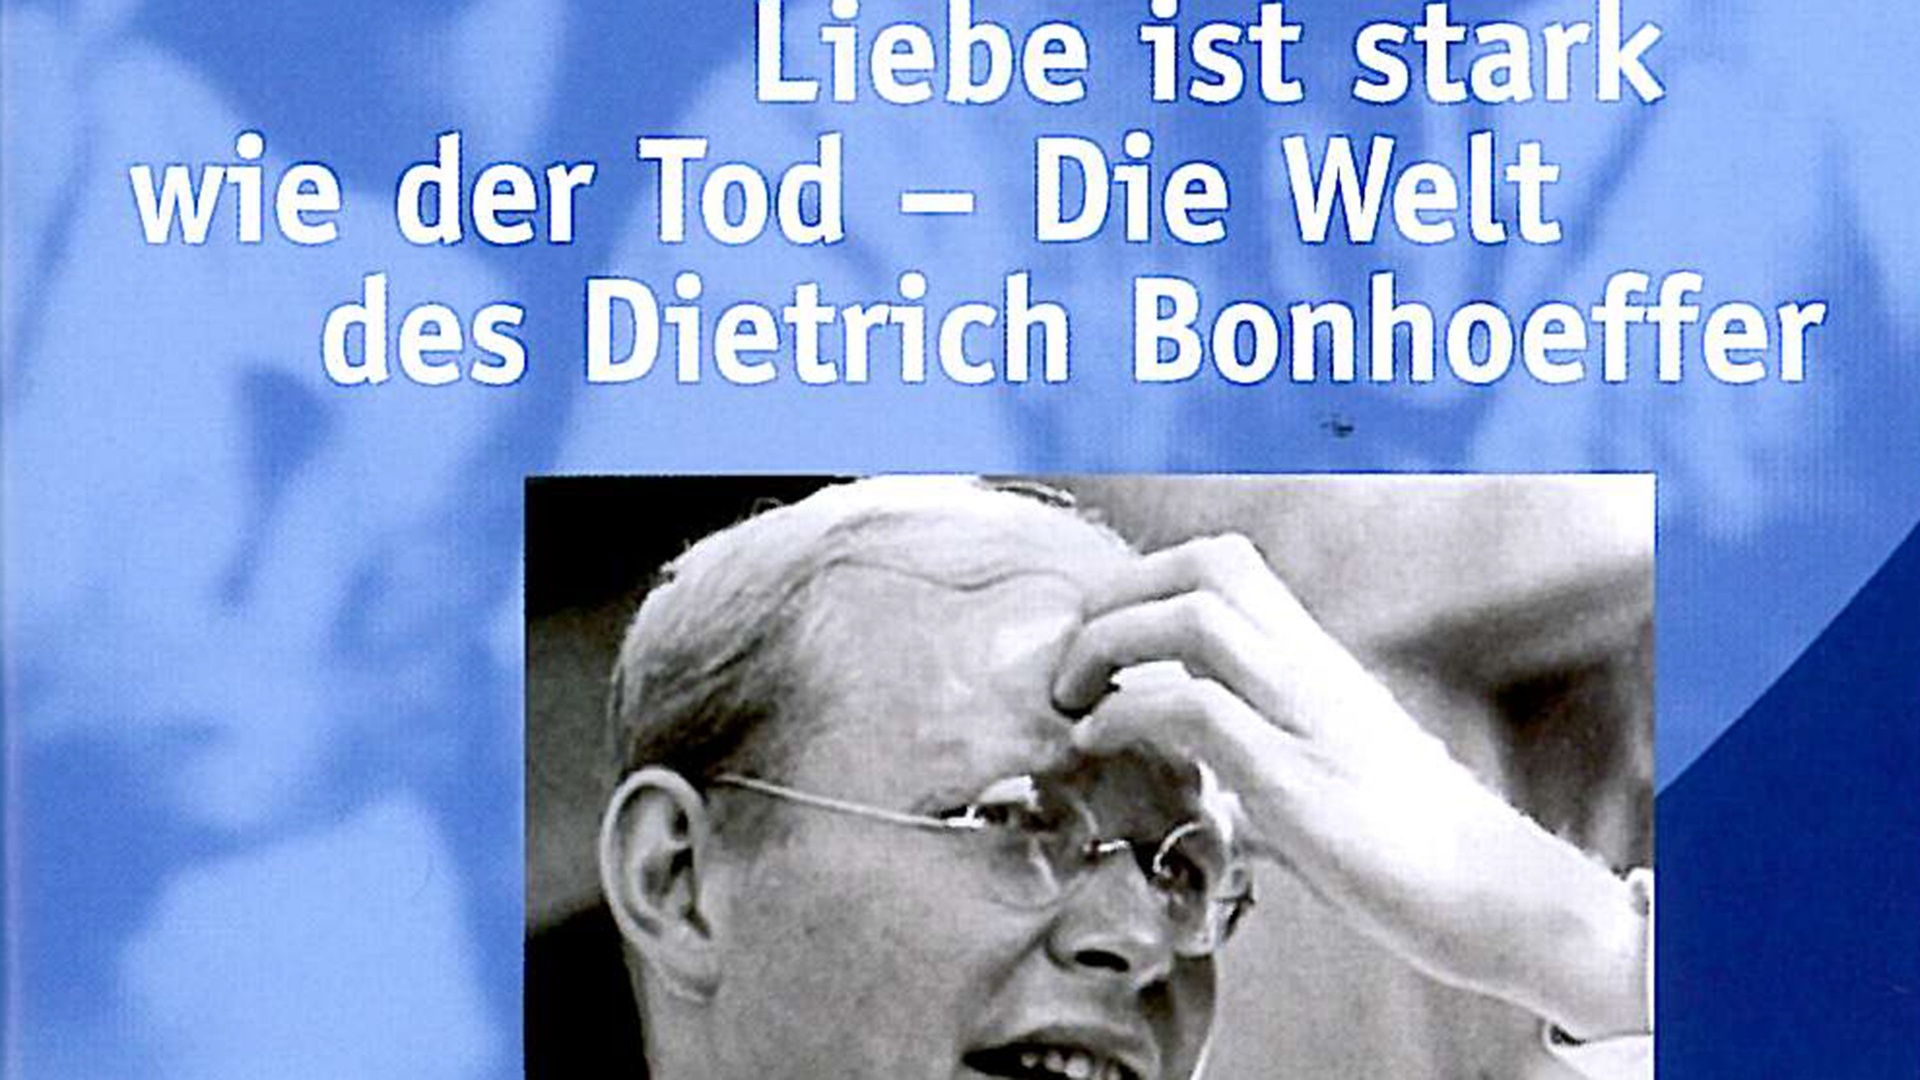 LIEBE IST STARK WIE DER TOD - Die Welt des Dietrich Bonhoeffer